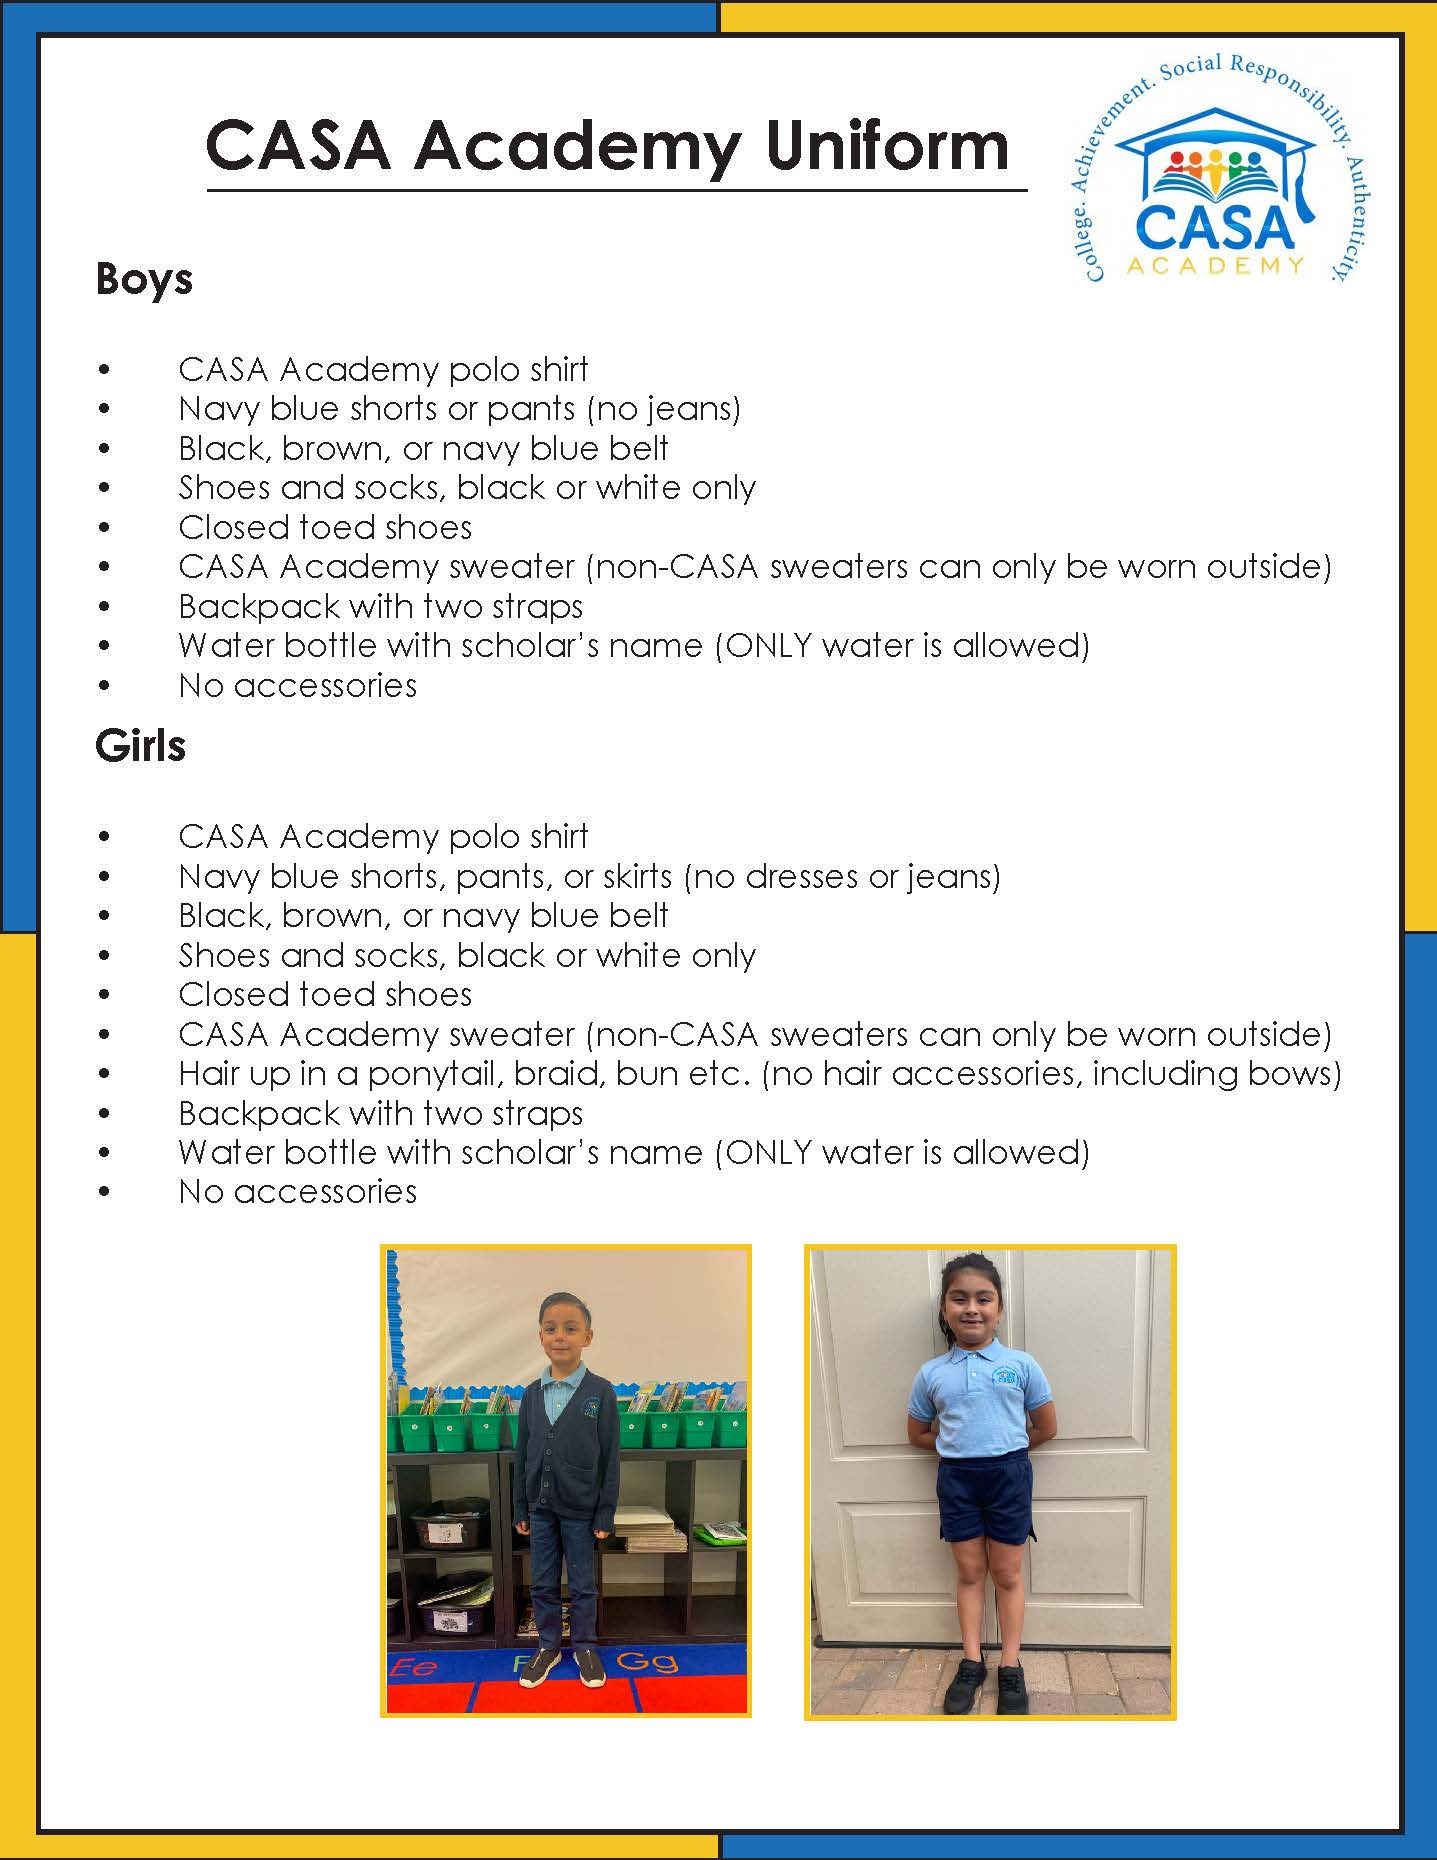 CASA Academy's uniform policy